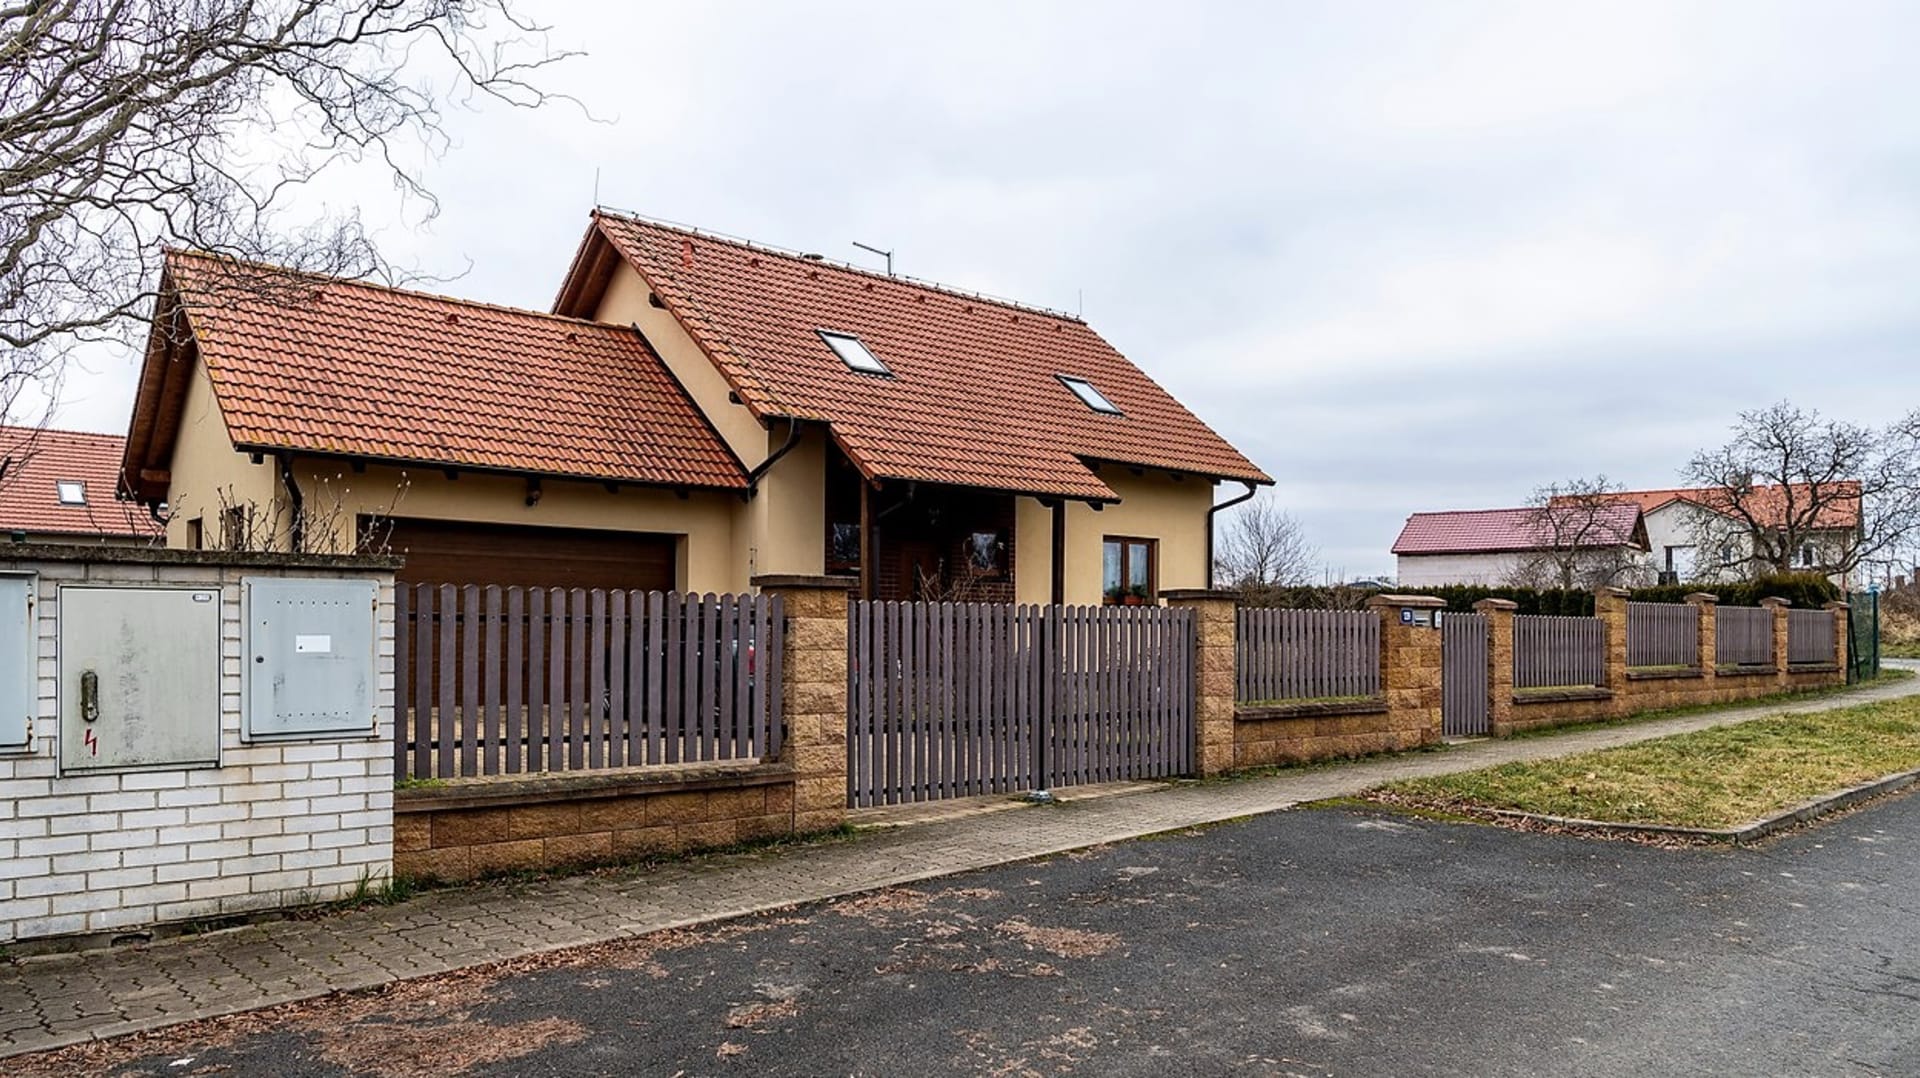 Pěkný dům v řadě novostaveb na okraji vesnice, kde nejčastěji žijí mladé rodiny s dětmi, není ničím výjimečný, vypadá jako běžný rodinný domek, kterých jsou v Černoučku desítky.